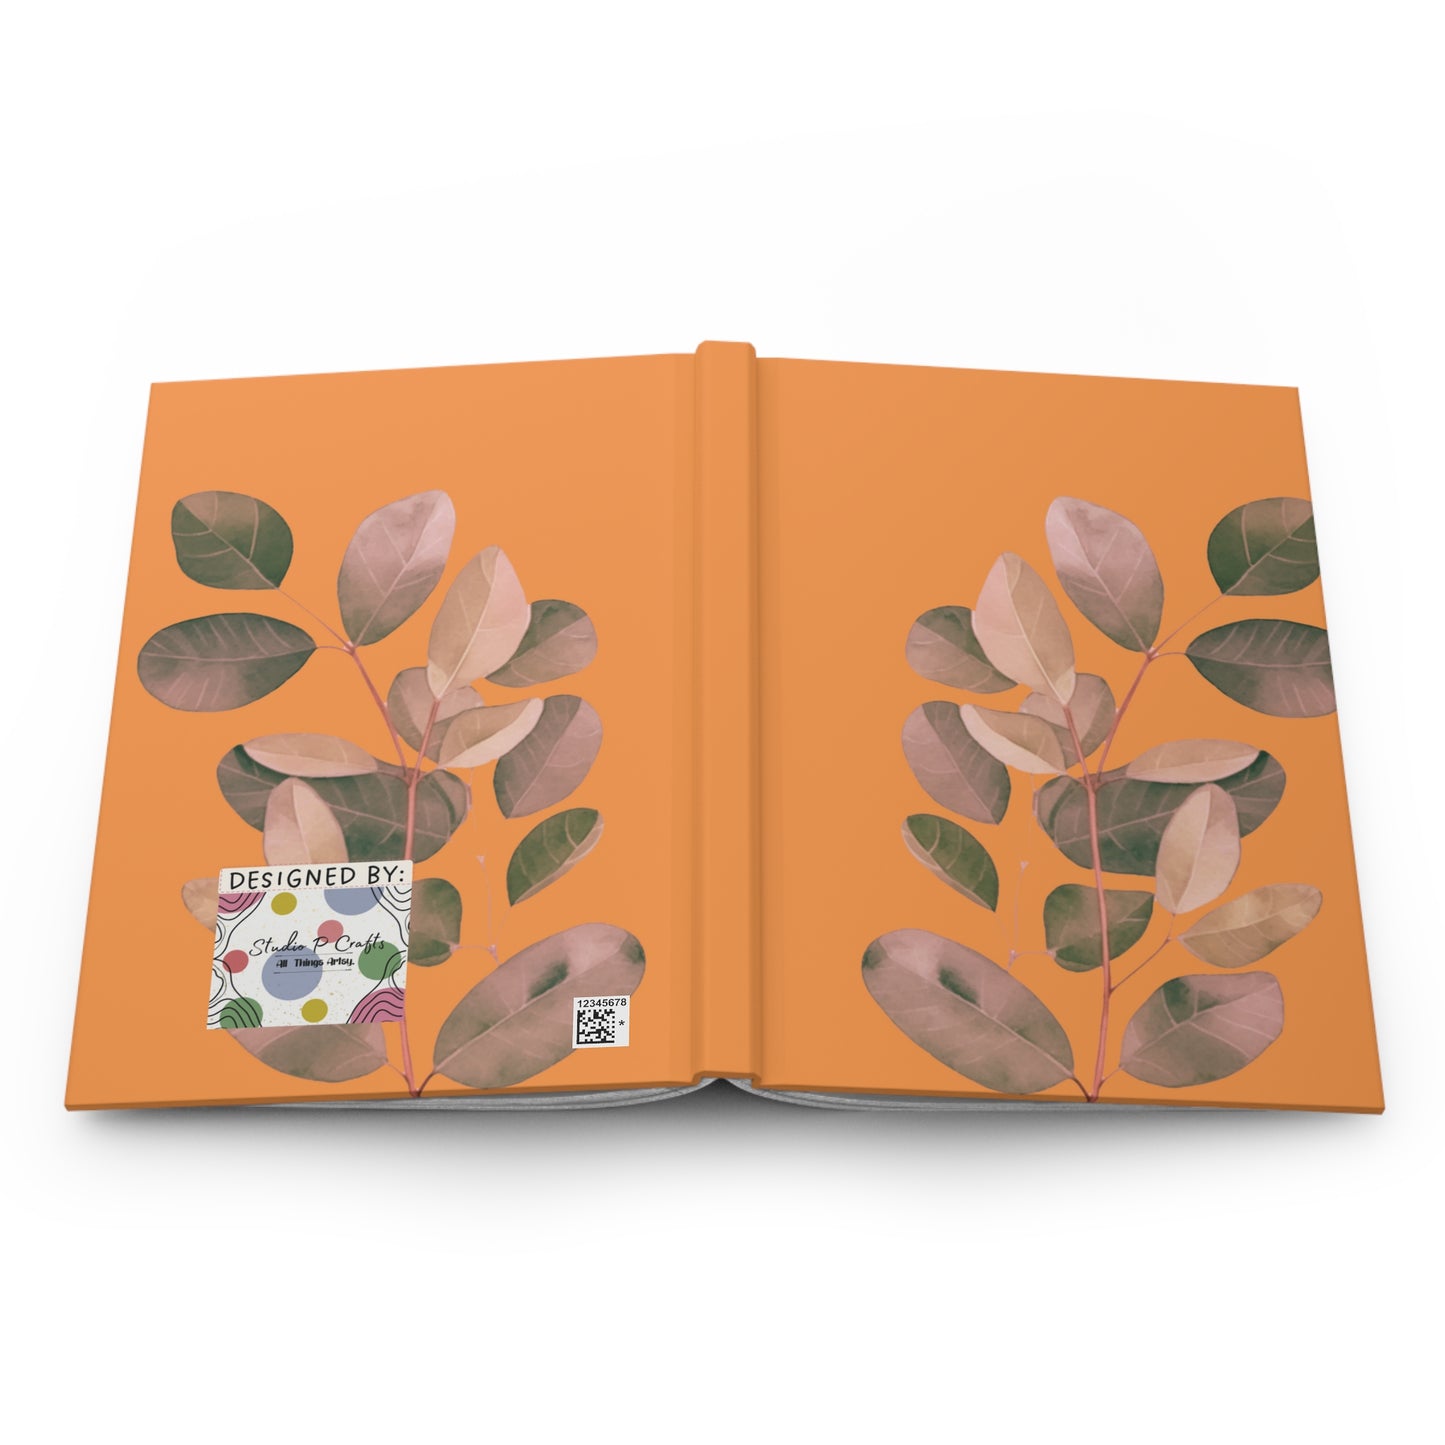 Leaf Vine Hardcover Journal, orange Color Journal, Orange Journal, Cute Hardcover Journals, Cute Journals, Flower Design Journals. Flower Journals, Personal Journal, Hardcover Journal Matte